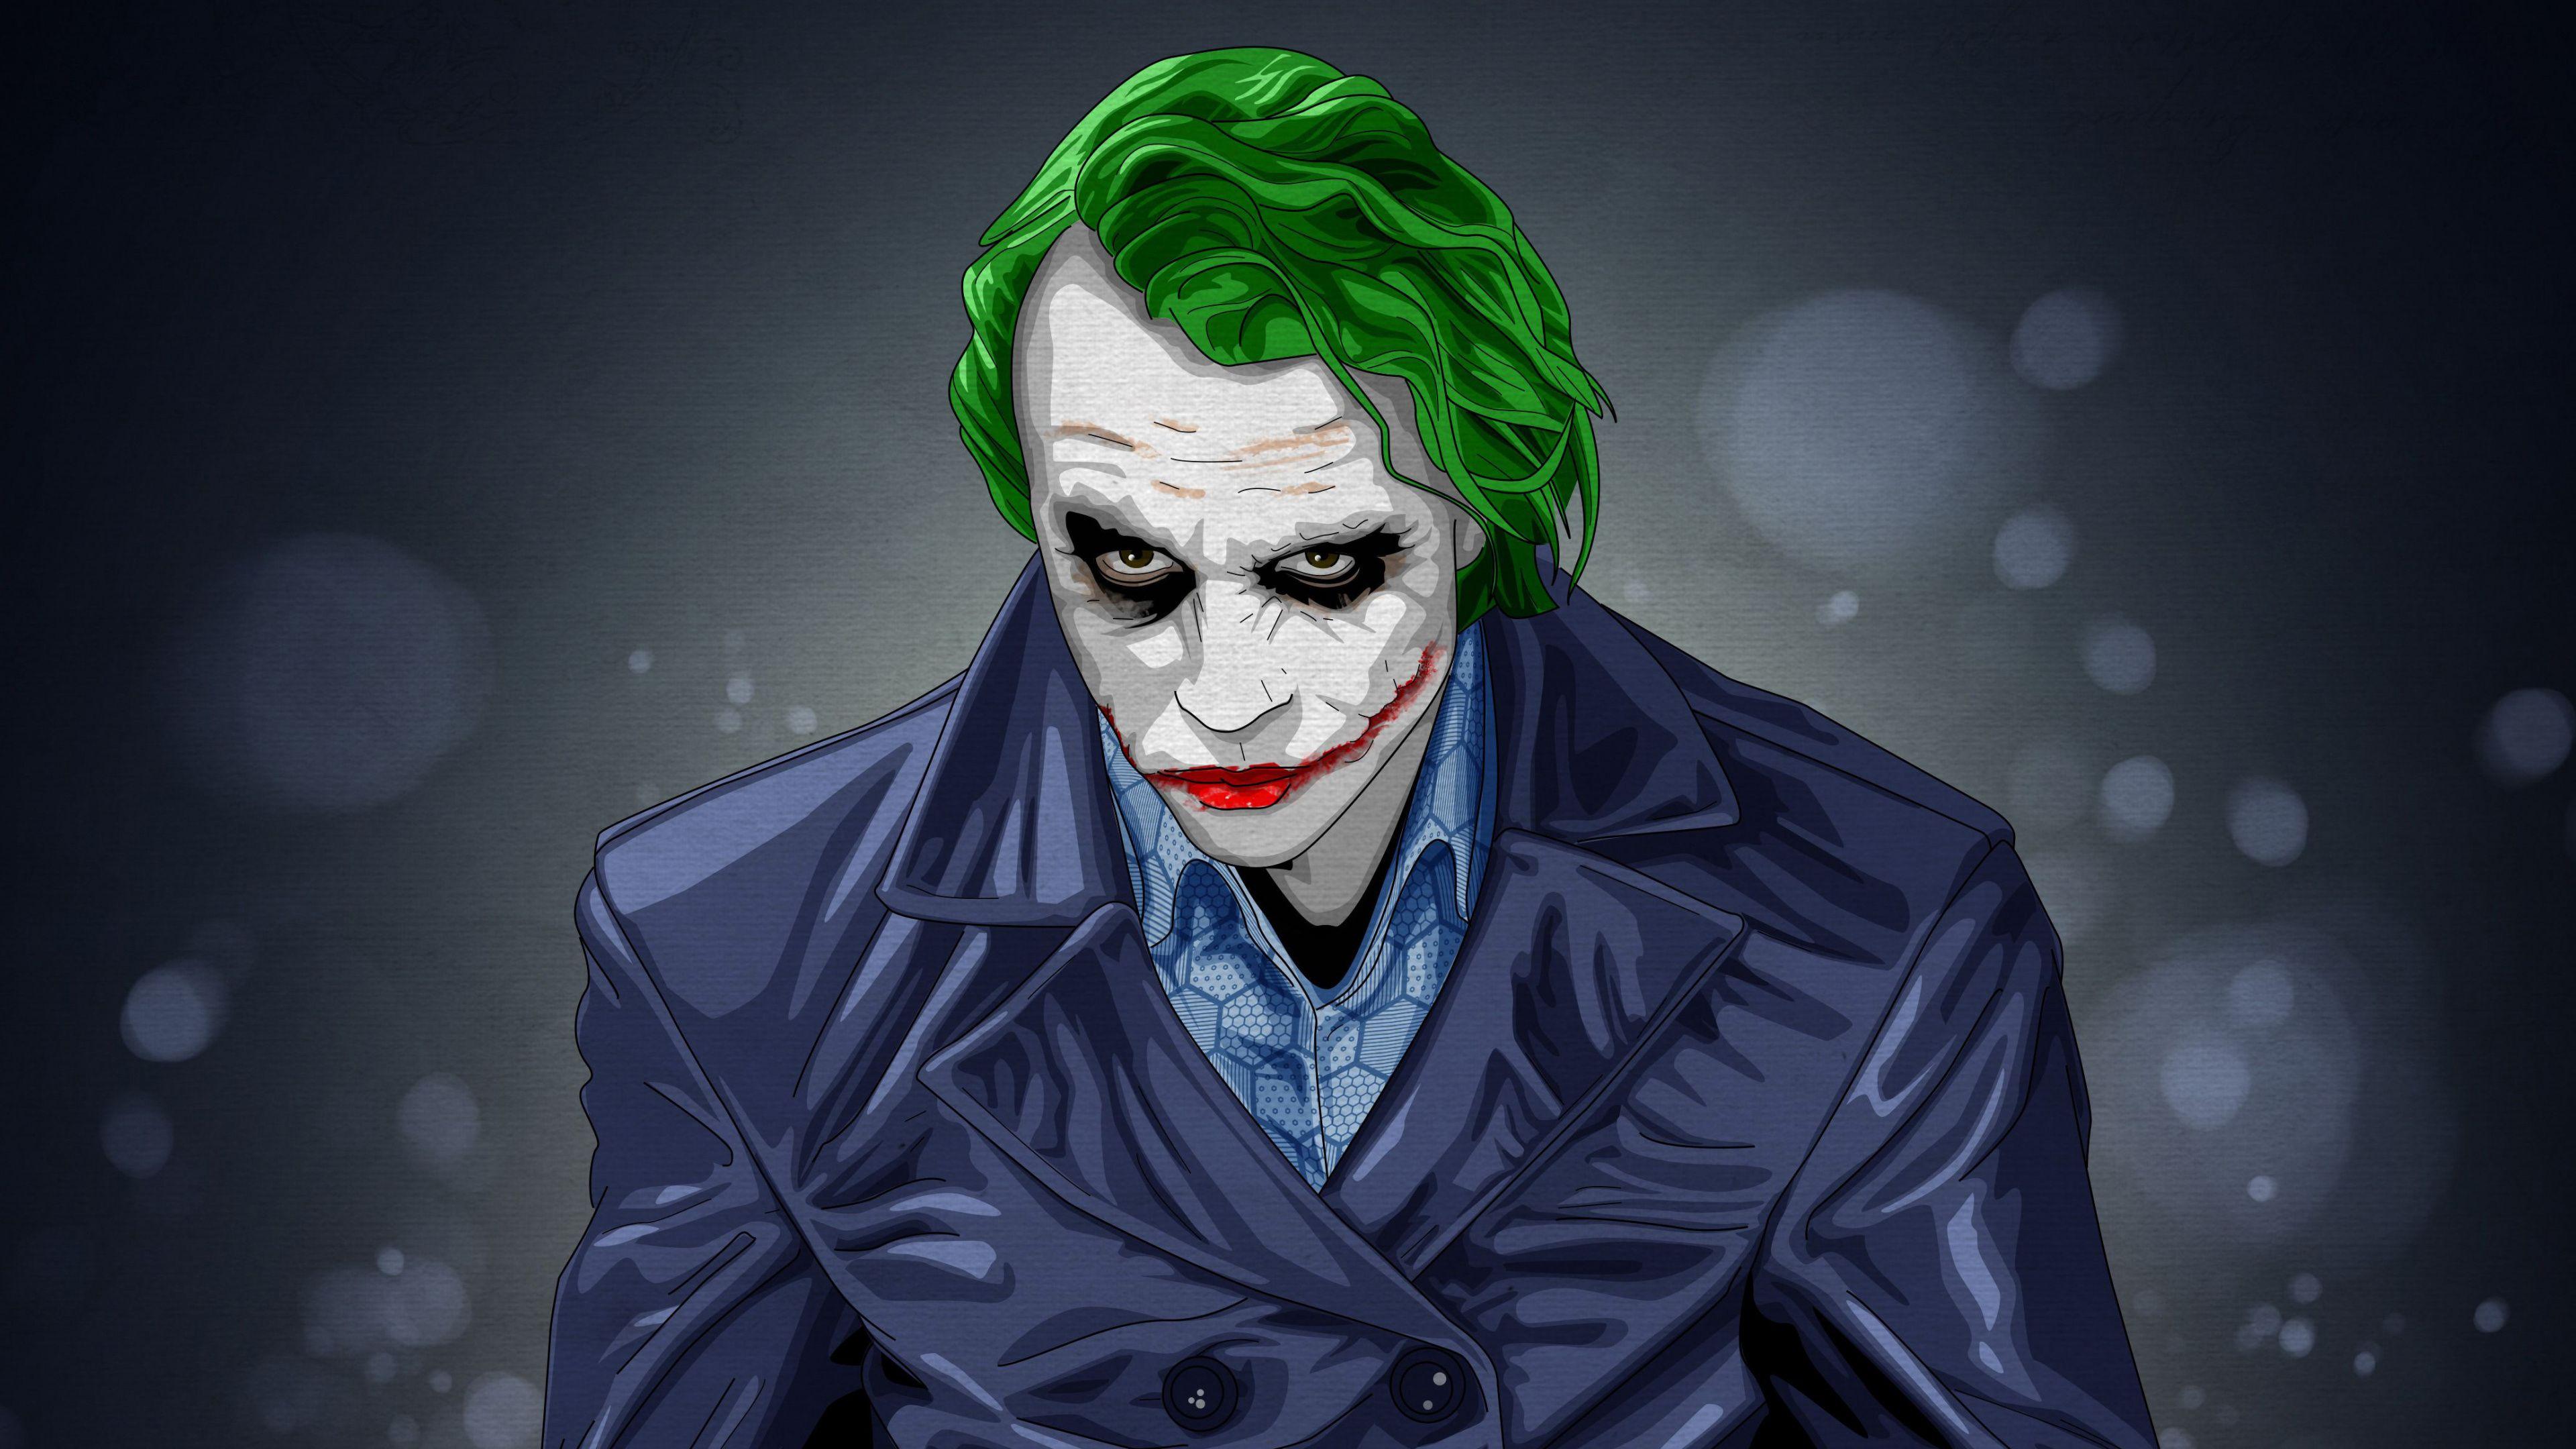 3840x2160 Tải xuống 3840x2160 hình nền Joker, khét tiếng, nhân vật phản diện, tác phẩm nghệ thuật